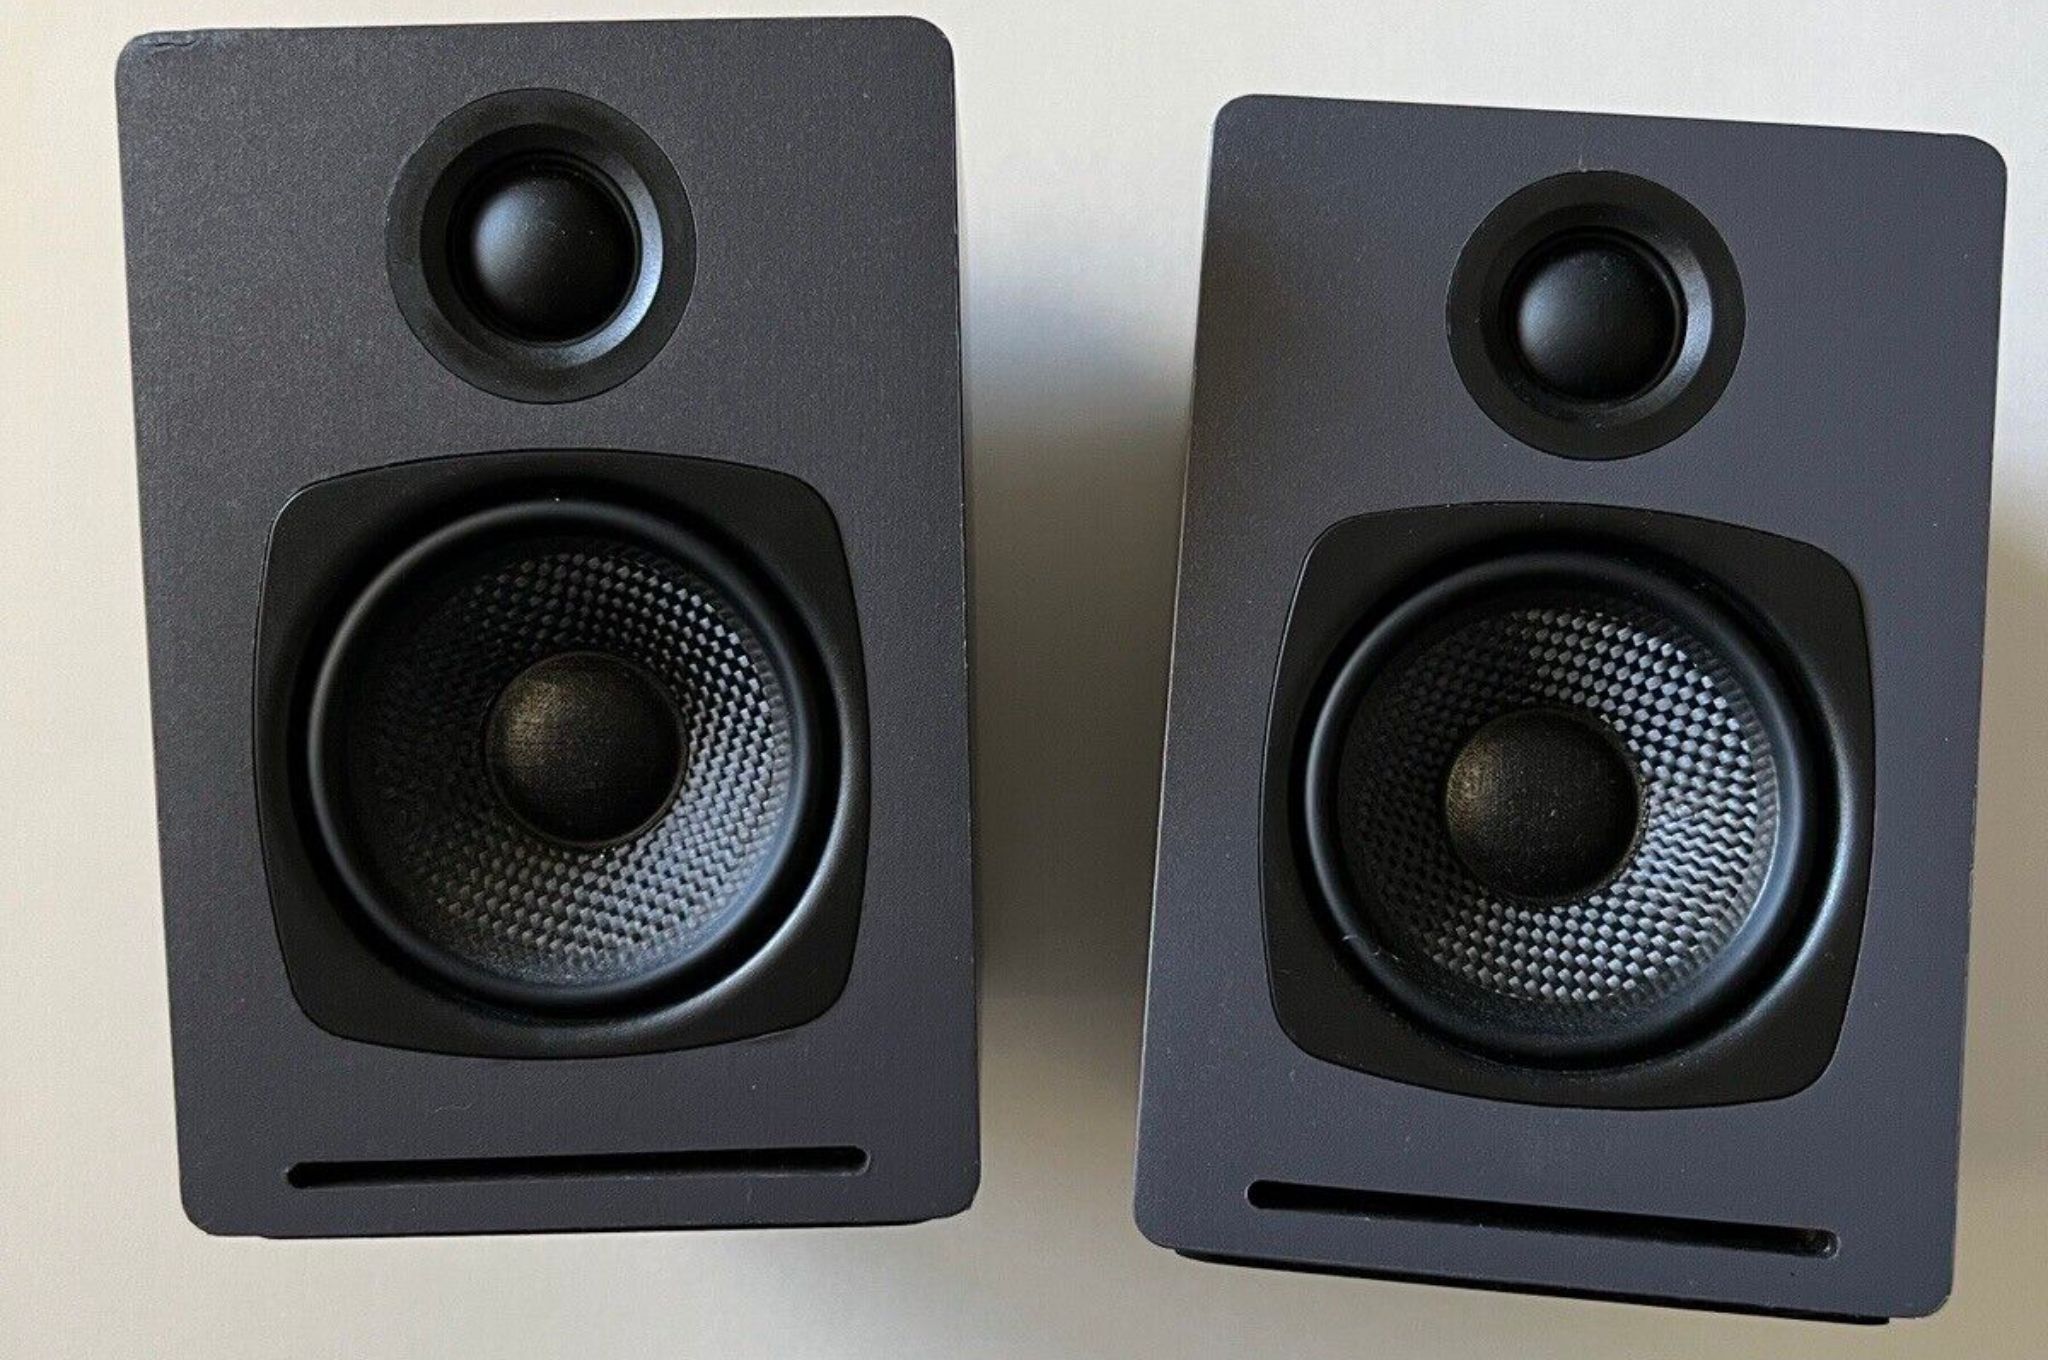 Pair of Audioengine A1 powered speakers